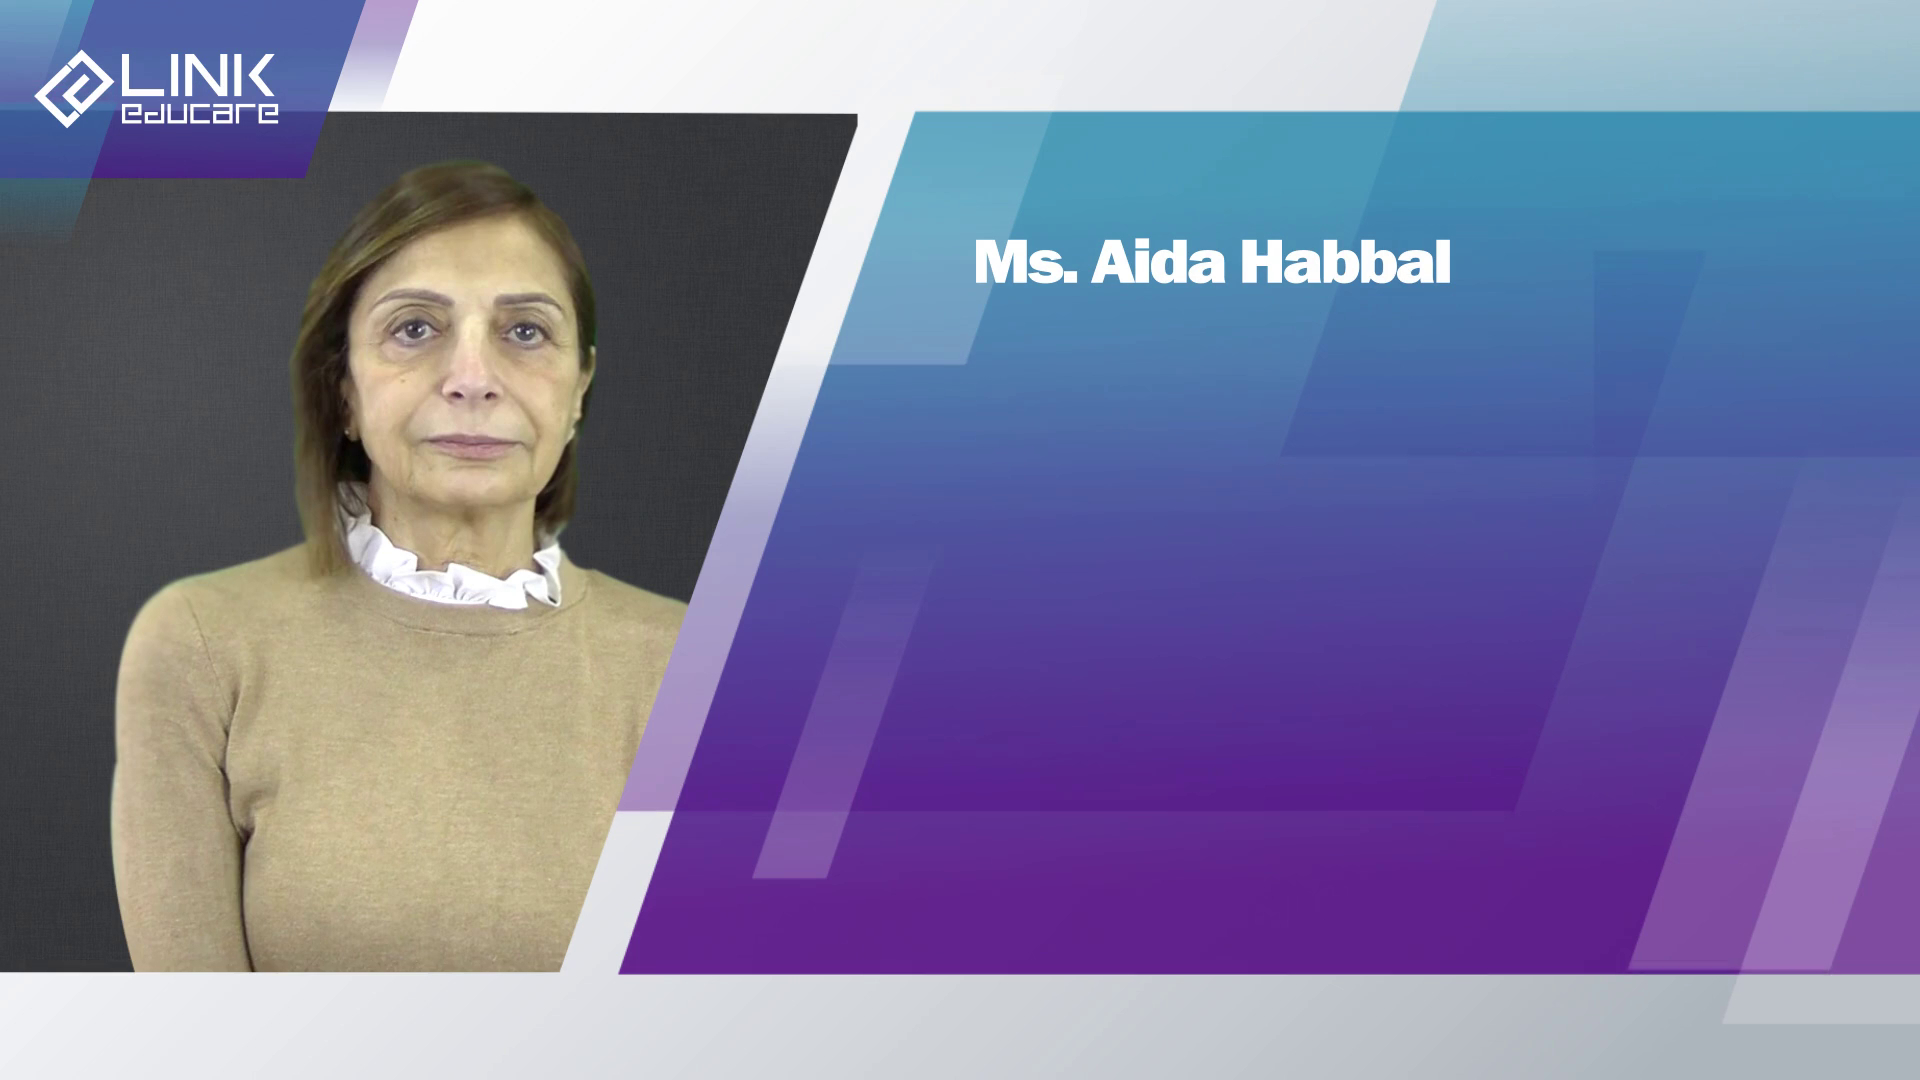 Ms. Aida Habbal